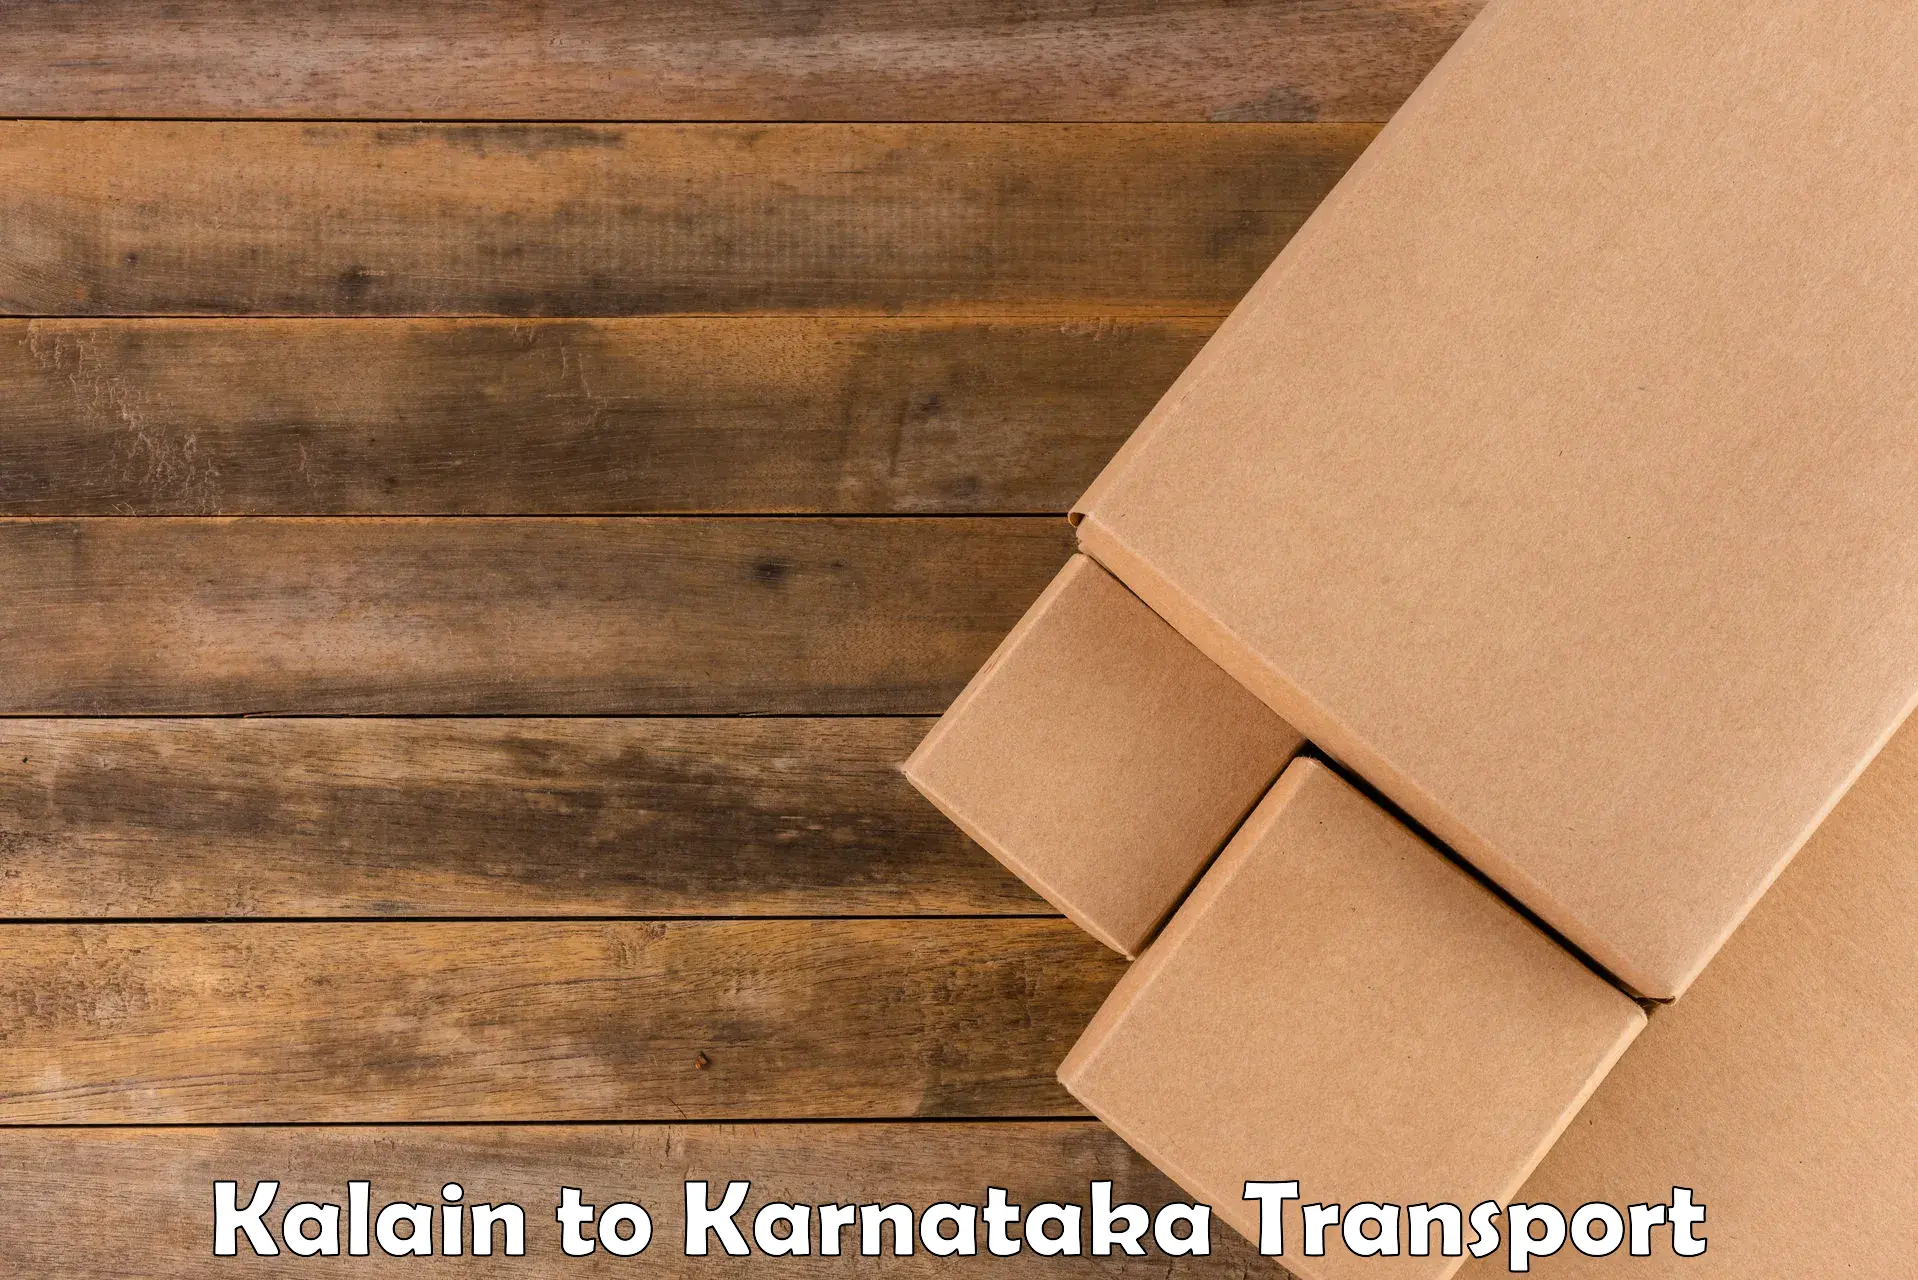 Container transport service Kalain to Karkala